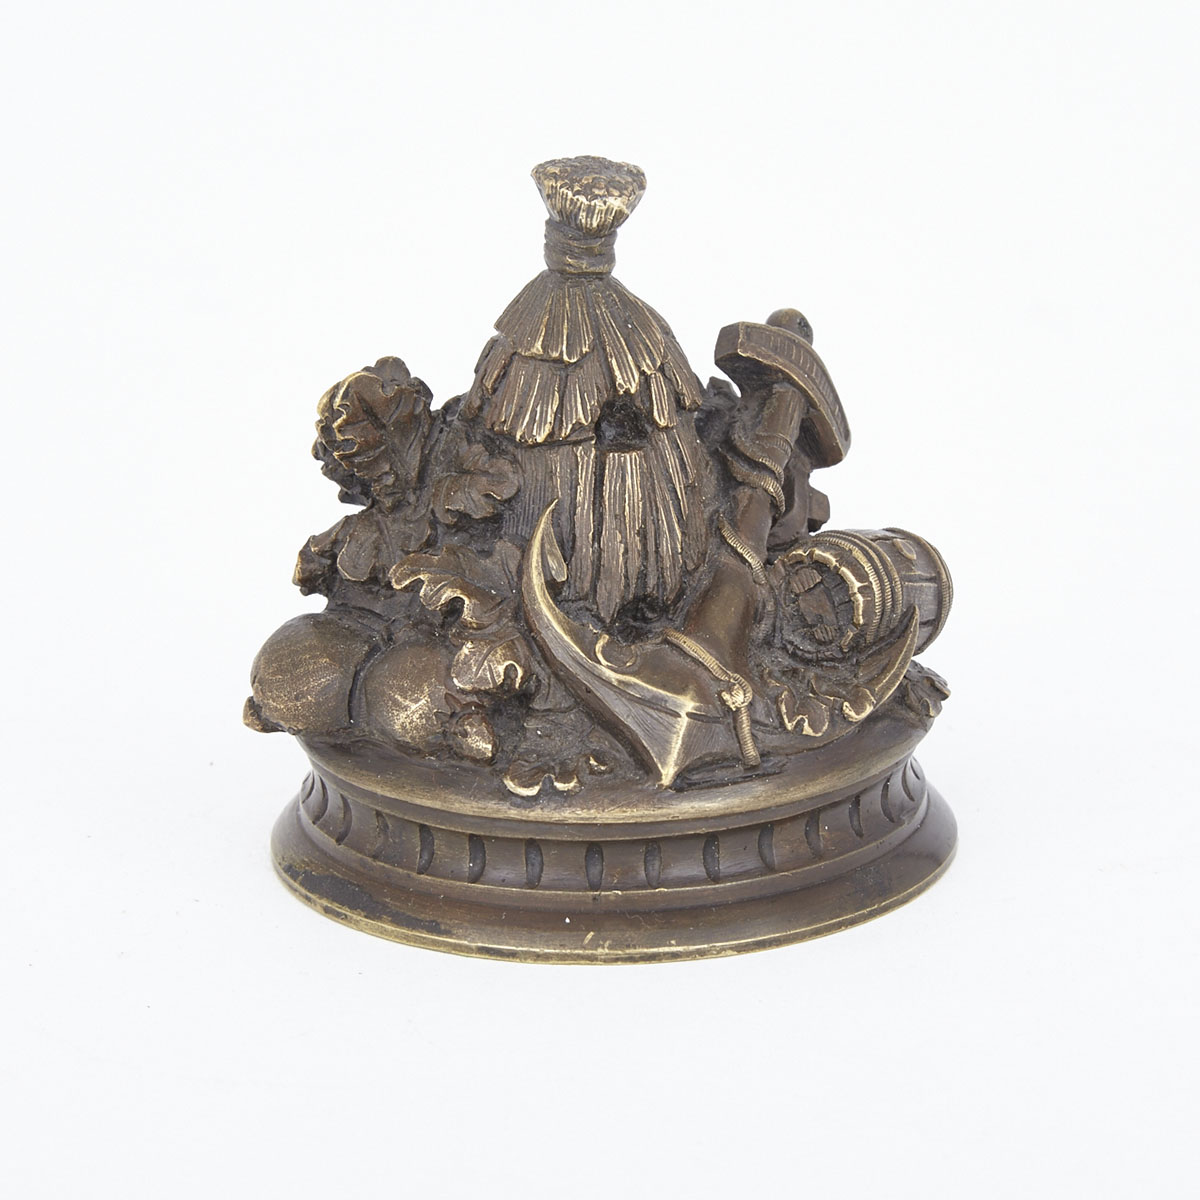 French Patinated Bronze Bibelot, 19th century